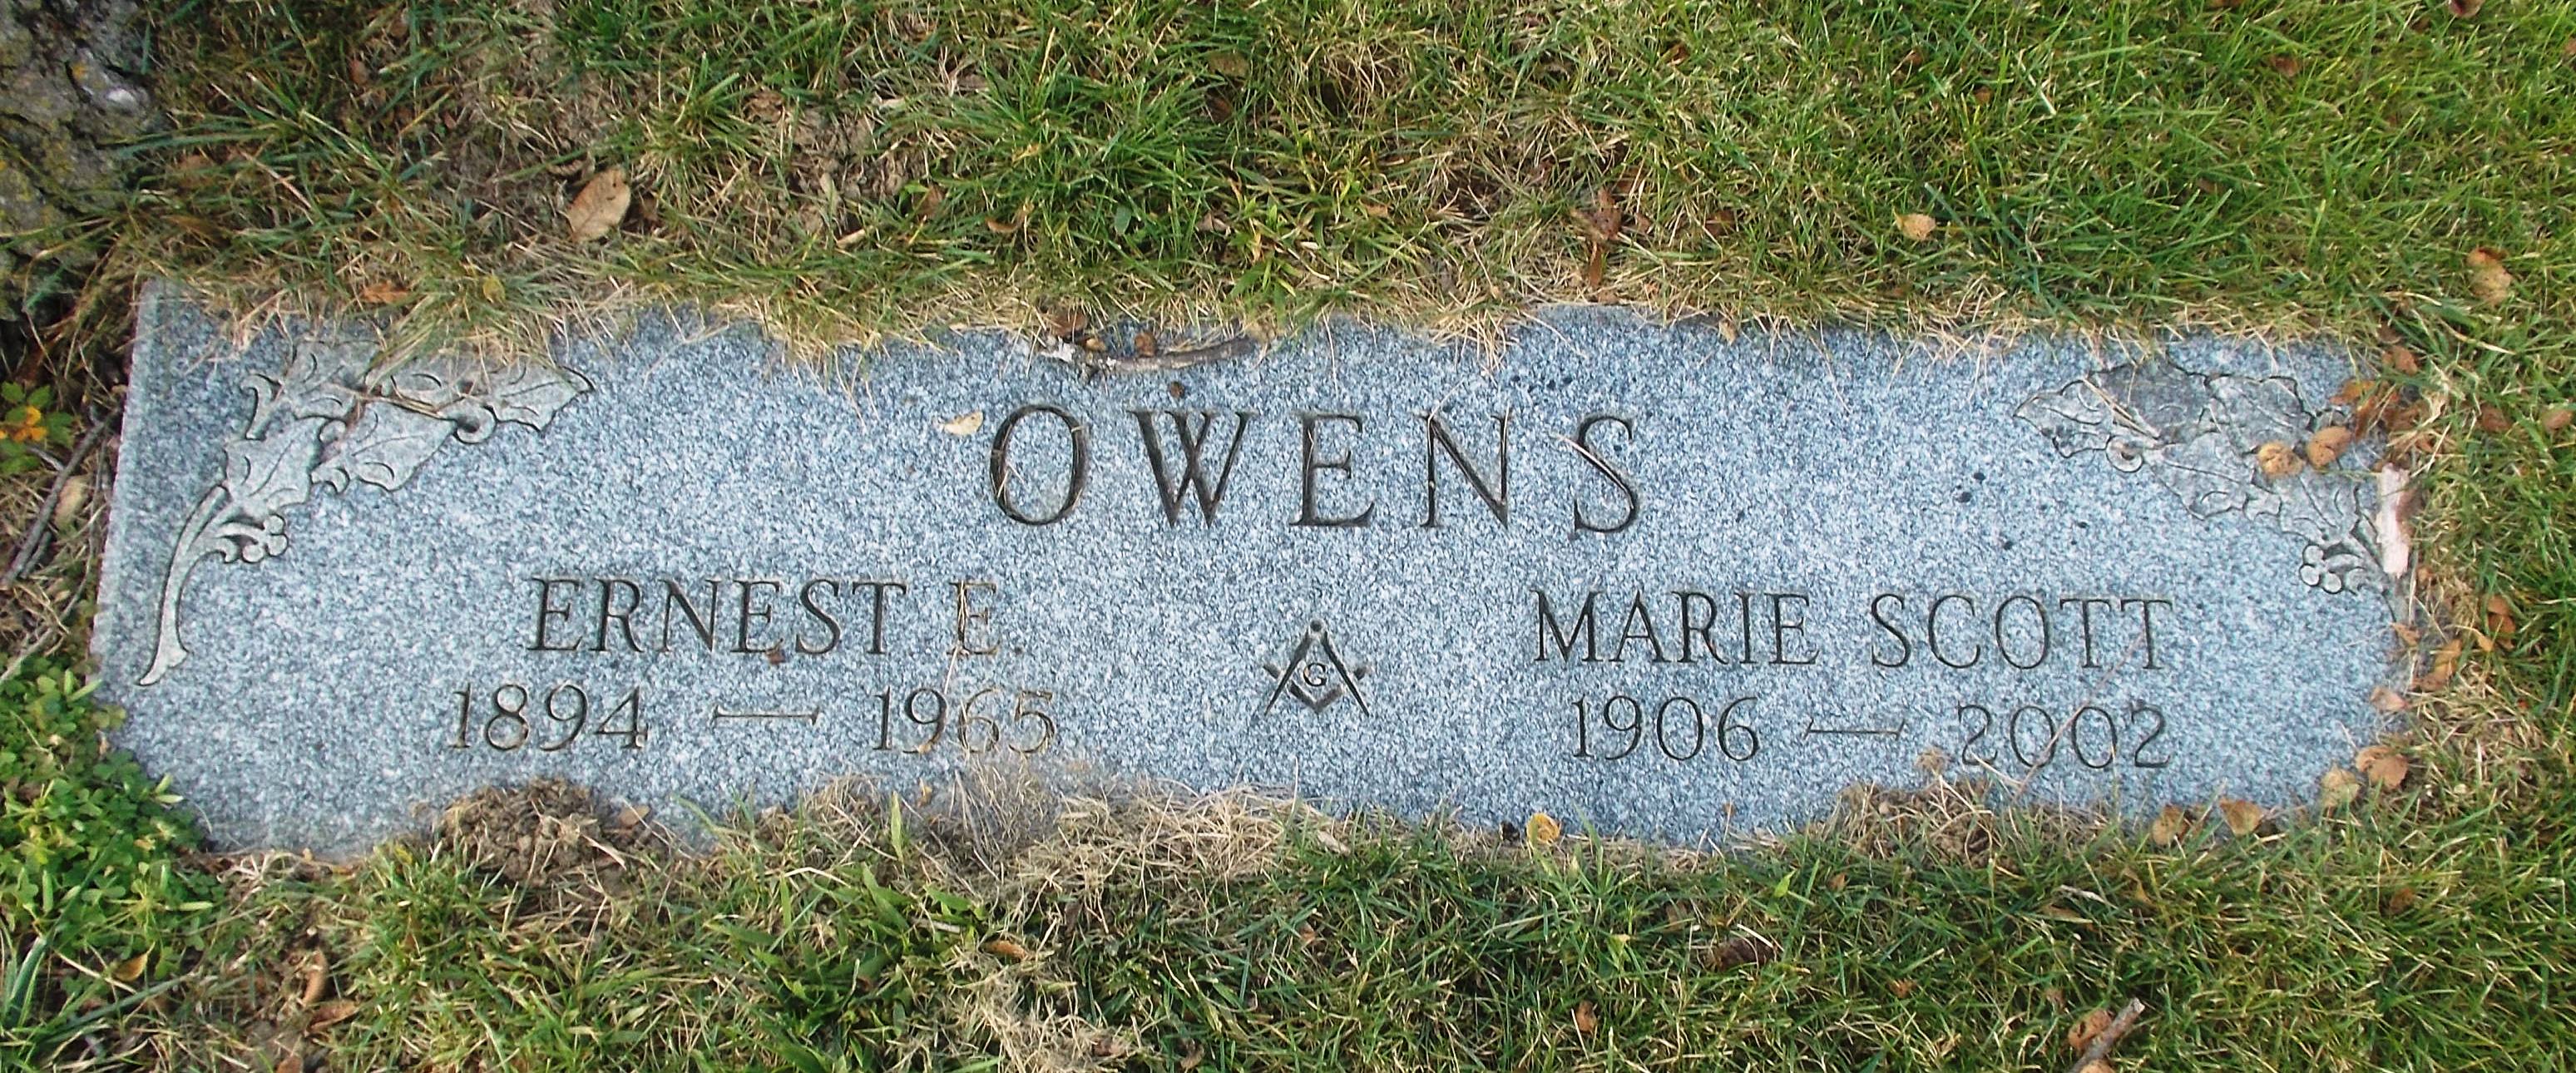 Ernest E Owens